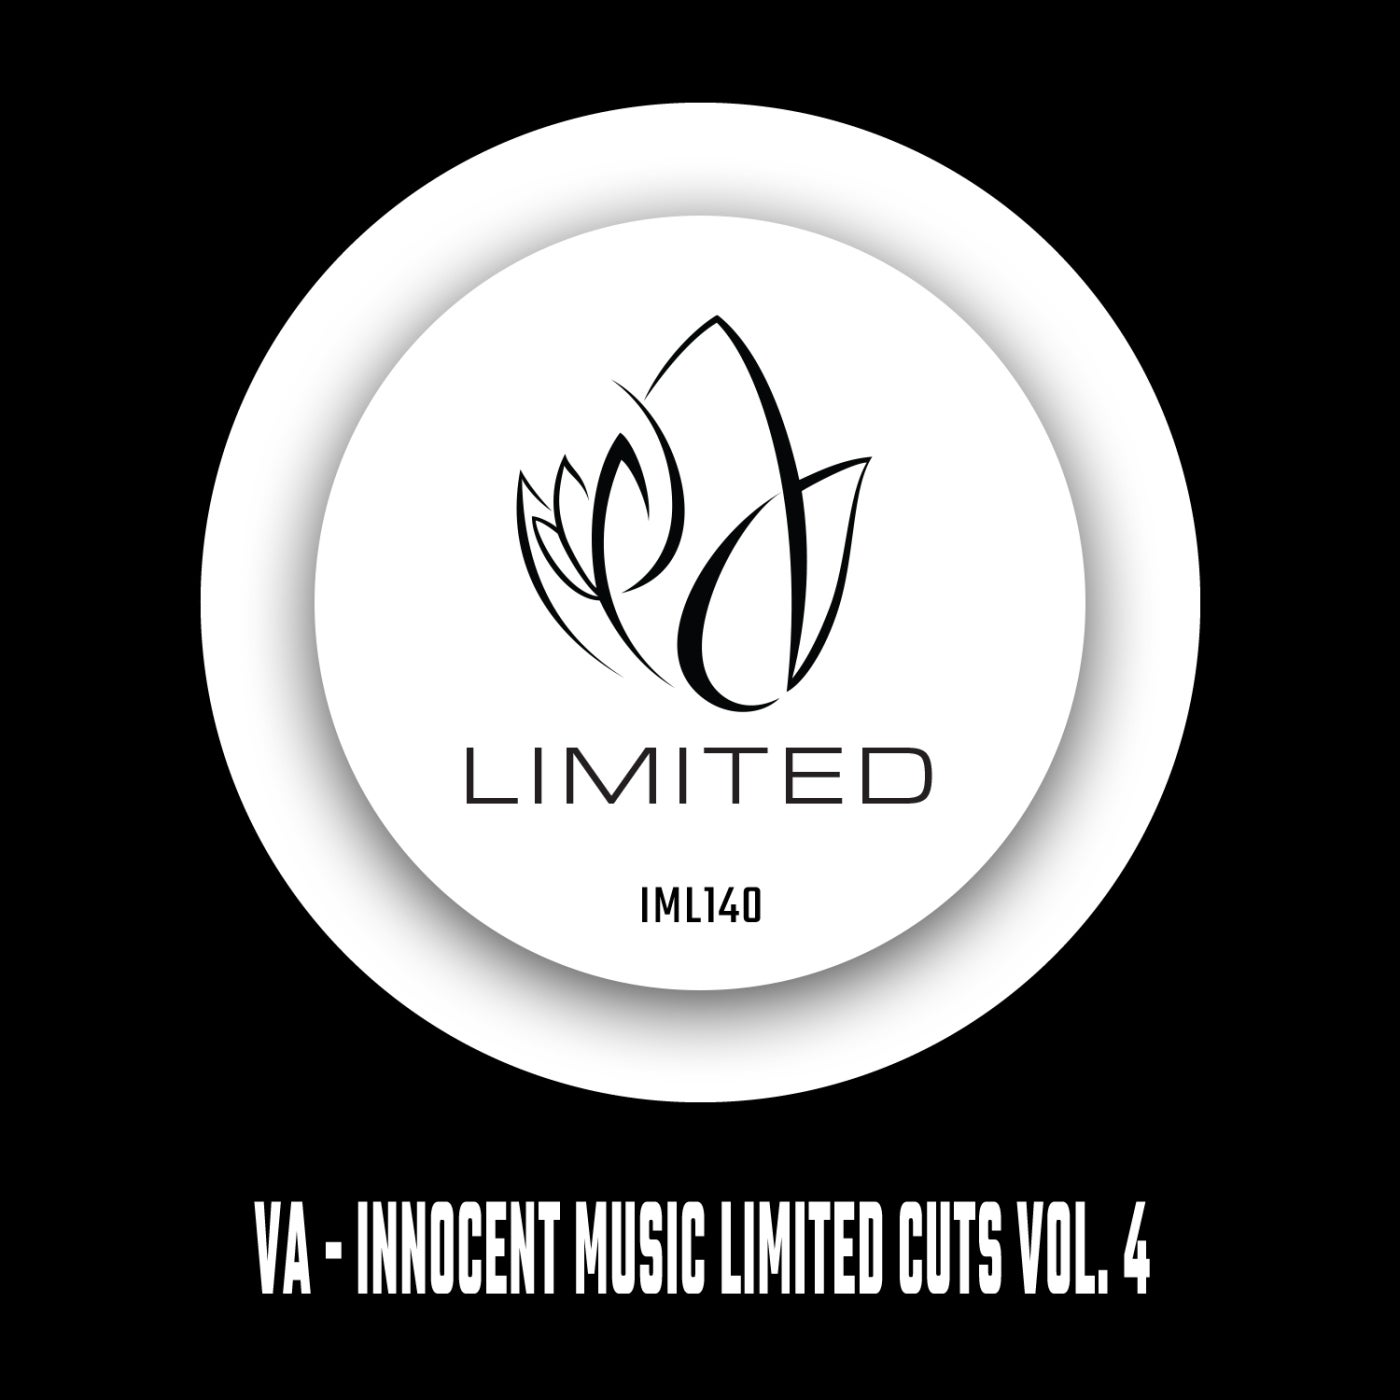 Innocent Music Limited Cuts, Vol. 4